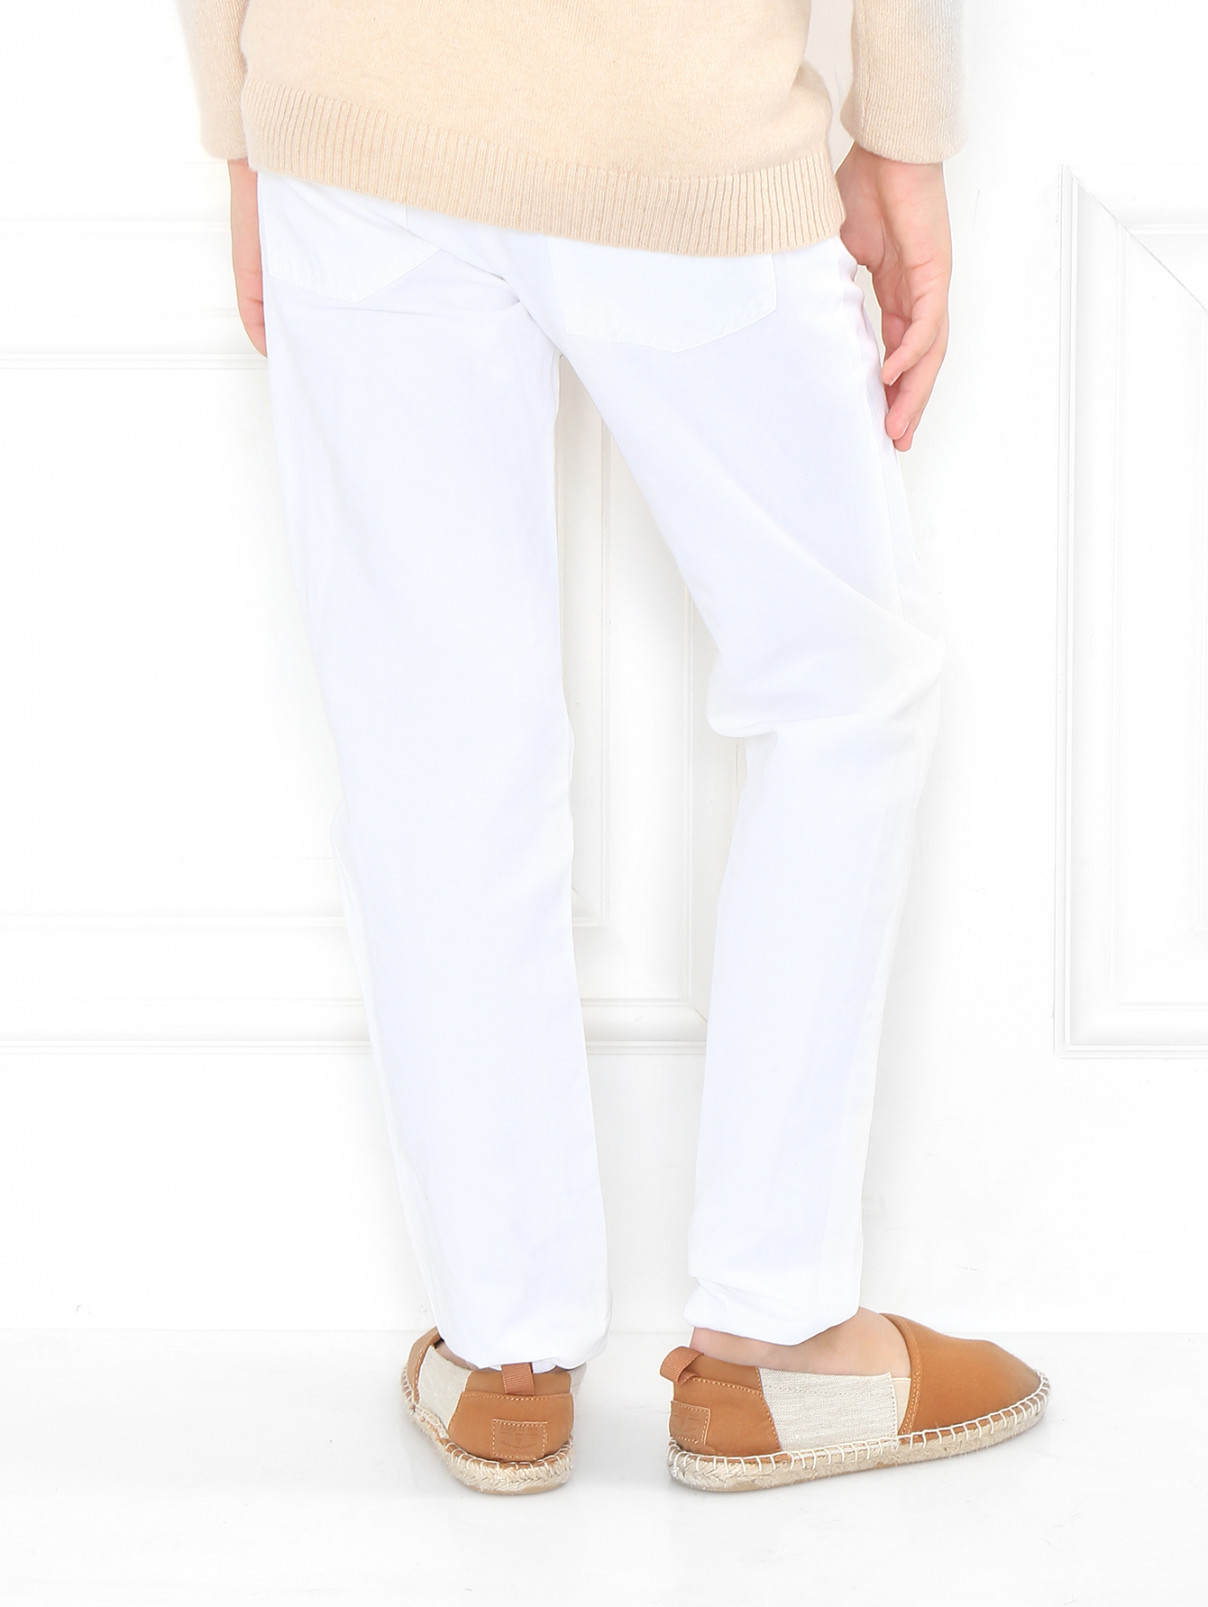 Узкие брюки из льна и хлопка Sonia Rykiel  –  Модель Верх-Низ1  – Цвет:  Белый